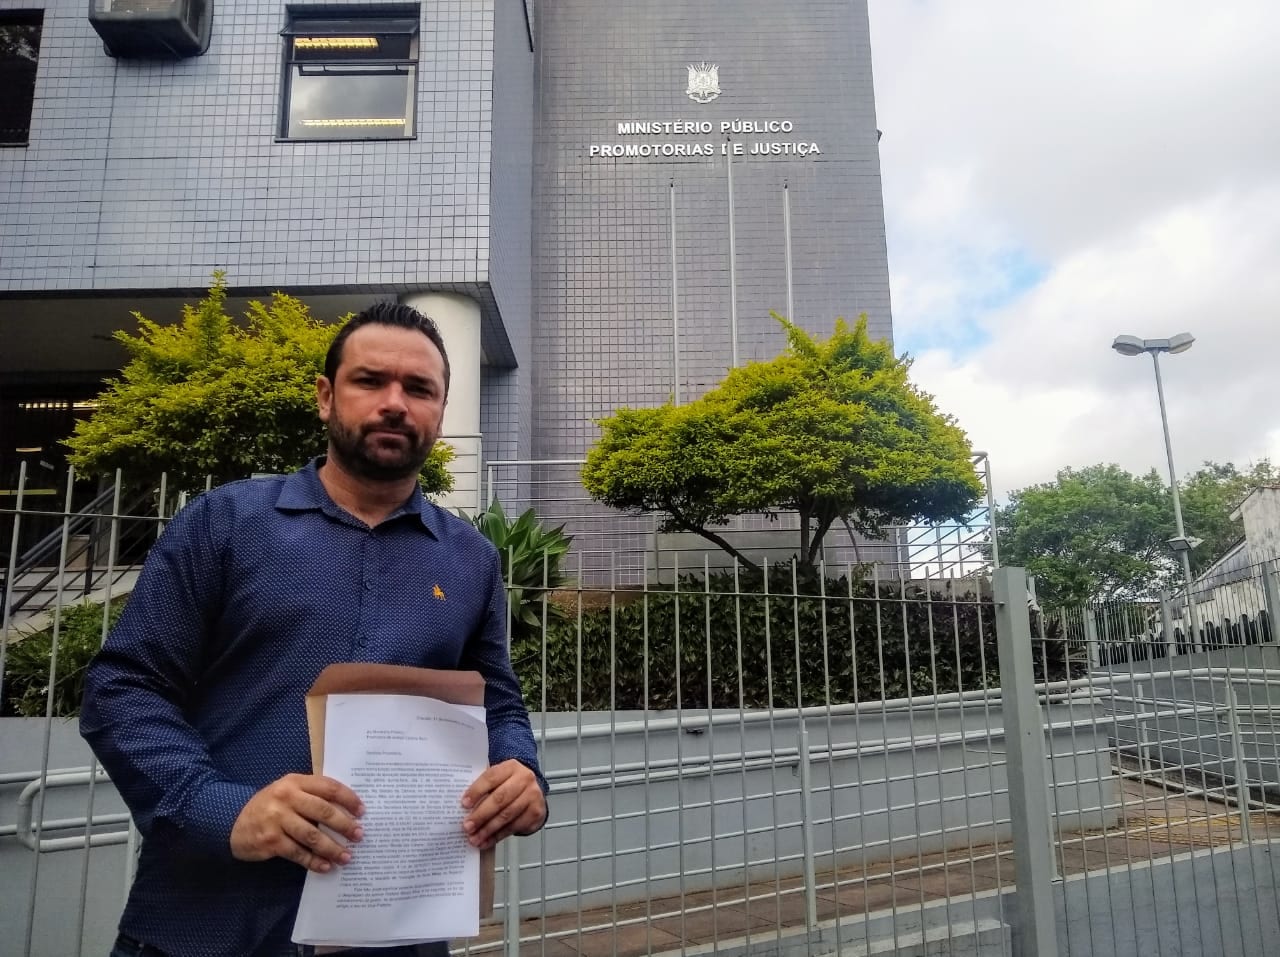 Denúncia contra ex-vice-prefeito chega ao Ministério Público; vereador quer a devolução de mais de R$ 40 mil